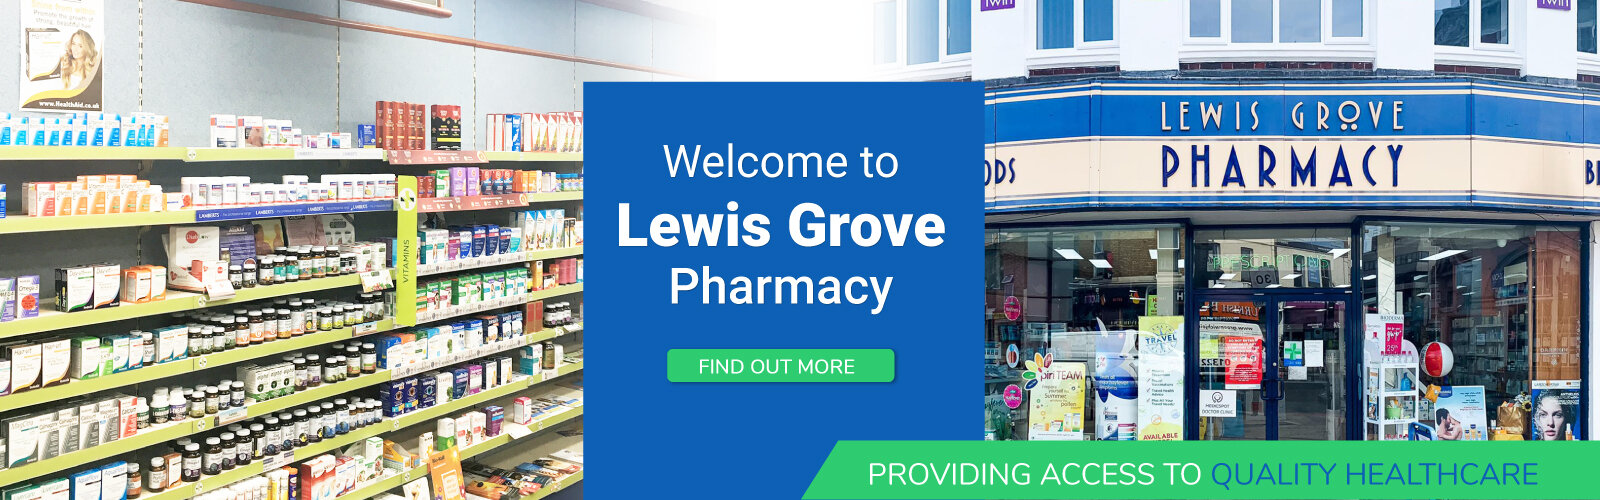 Lewis Grove Pharmacy